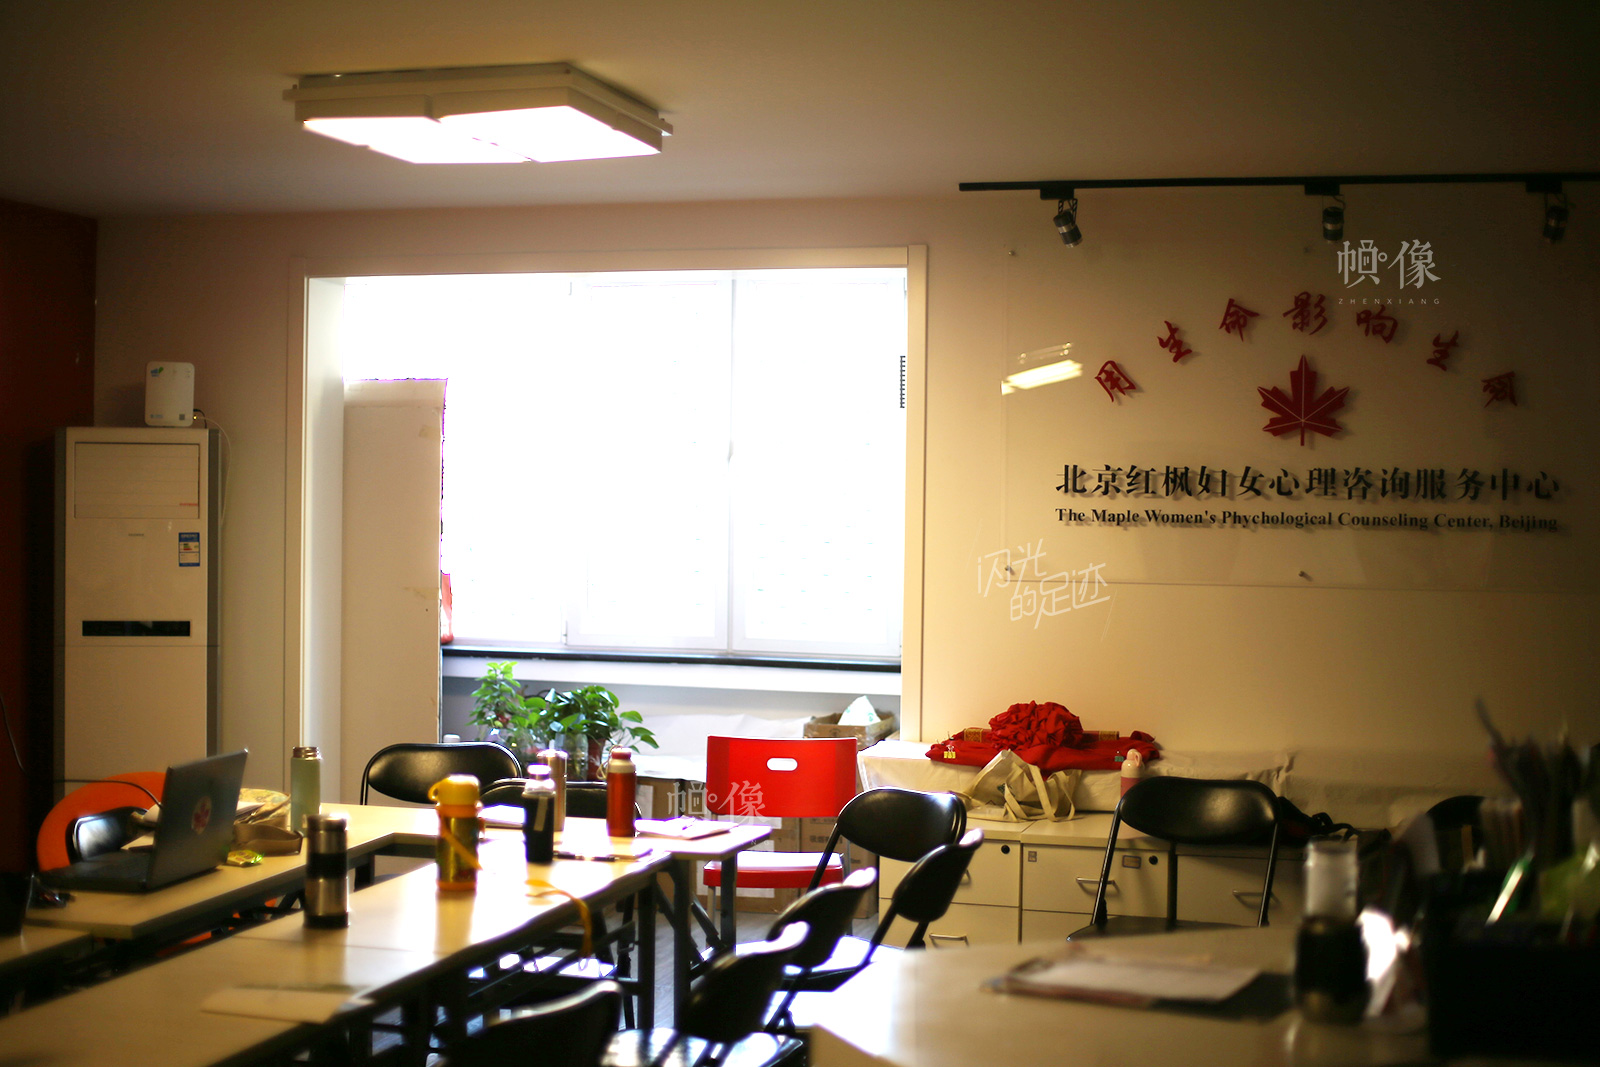 北京红枫妇女心理咨询服务中心成立于1988年10月，1992年红枫妇女心理公益热线正式开通，是由妇女问题专家王行娟女士以及一批热心于妇女事业的知识女性自愿组织起来的非营利性民间妇女组织。中国网记者 吴闻达 摄